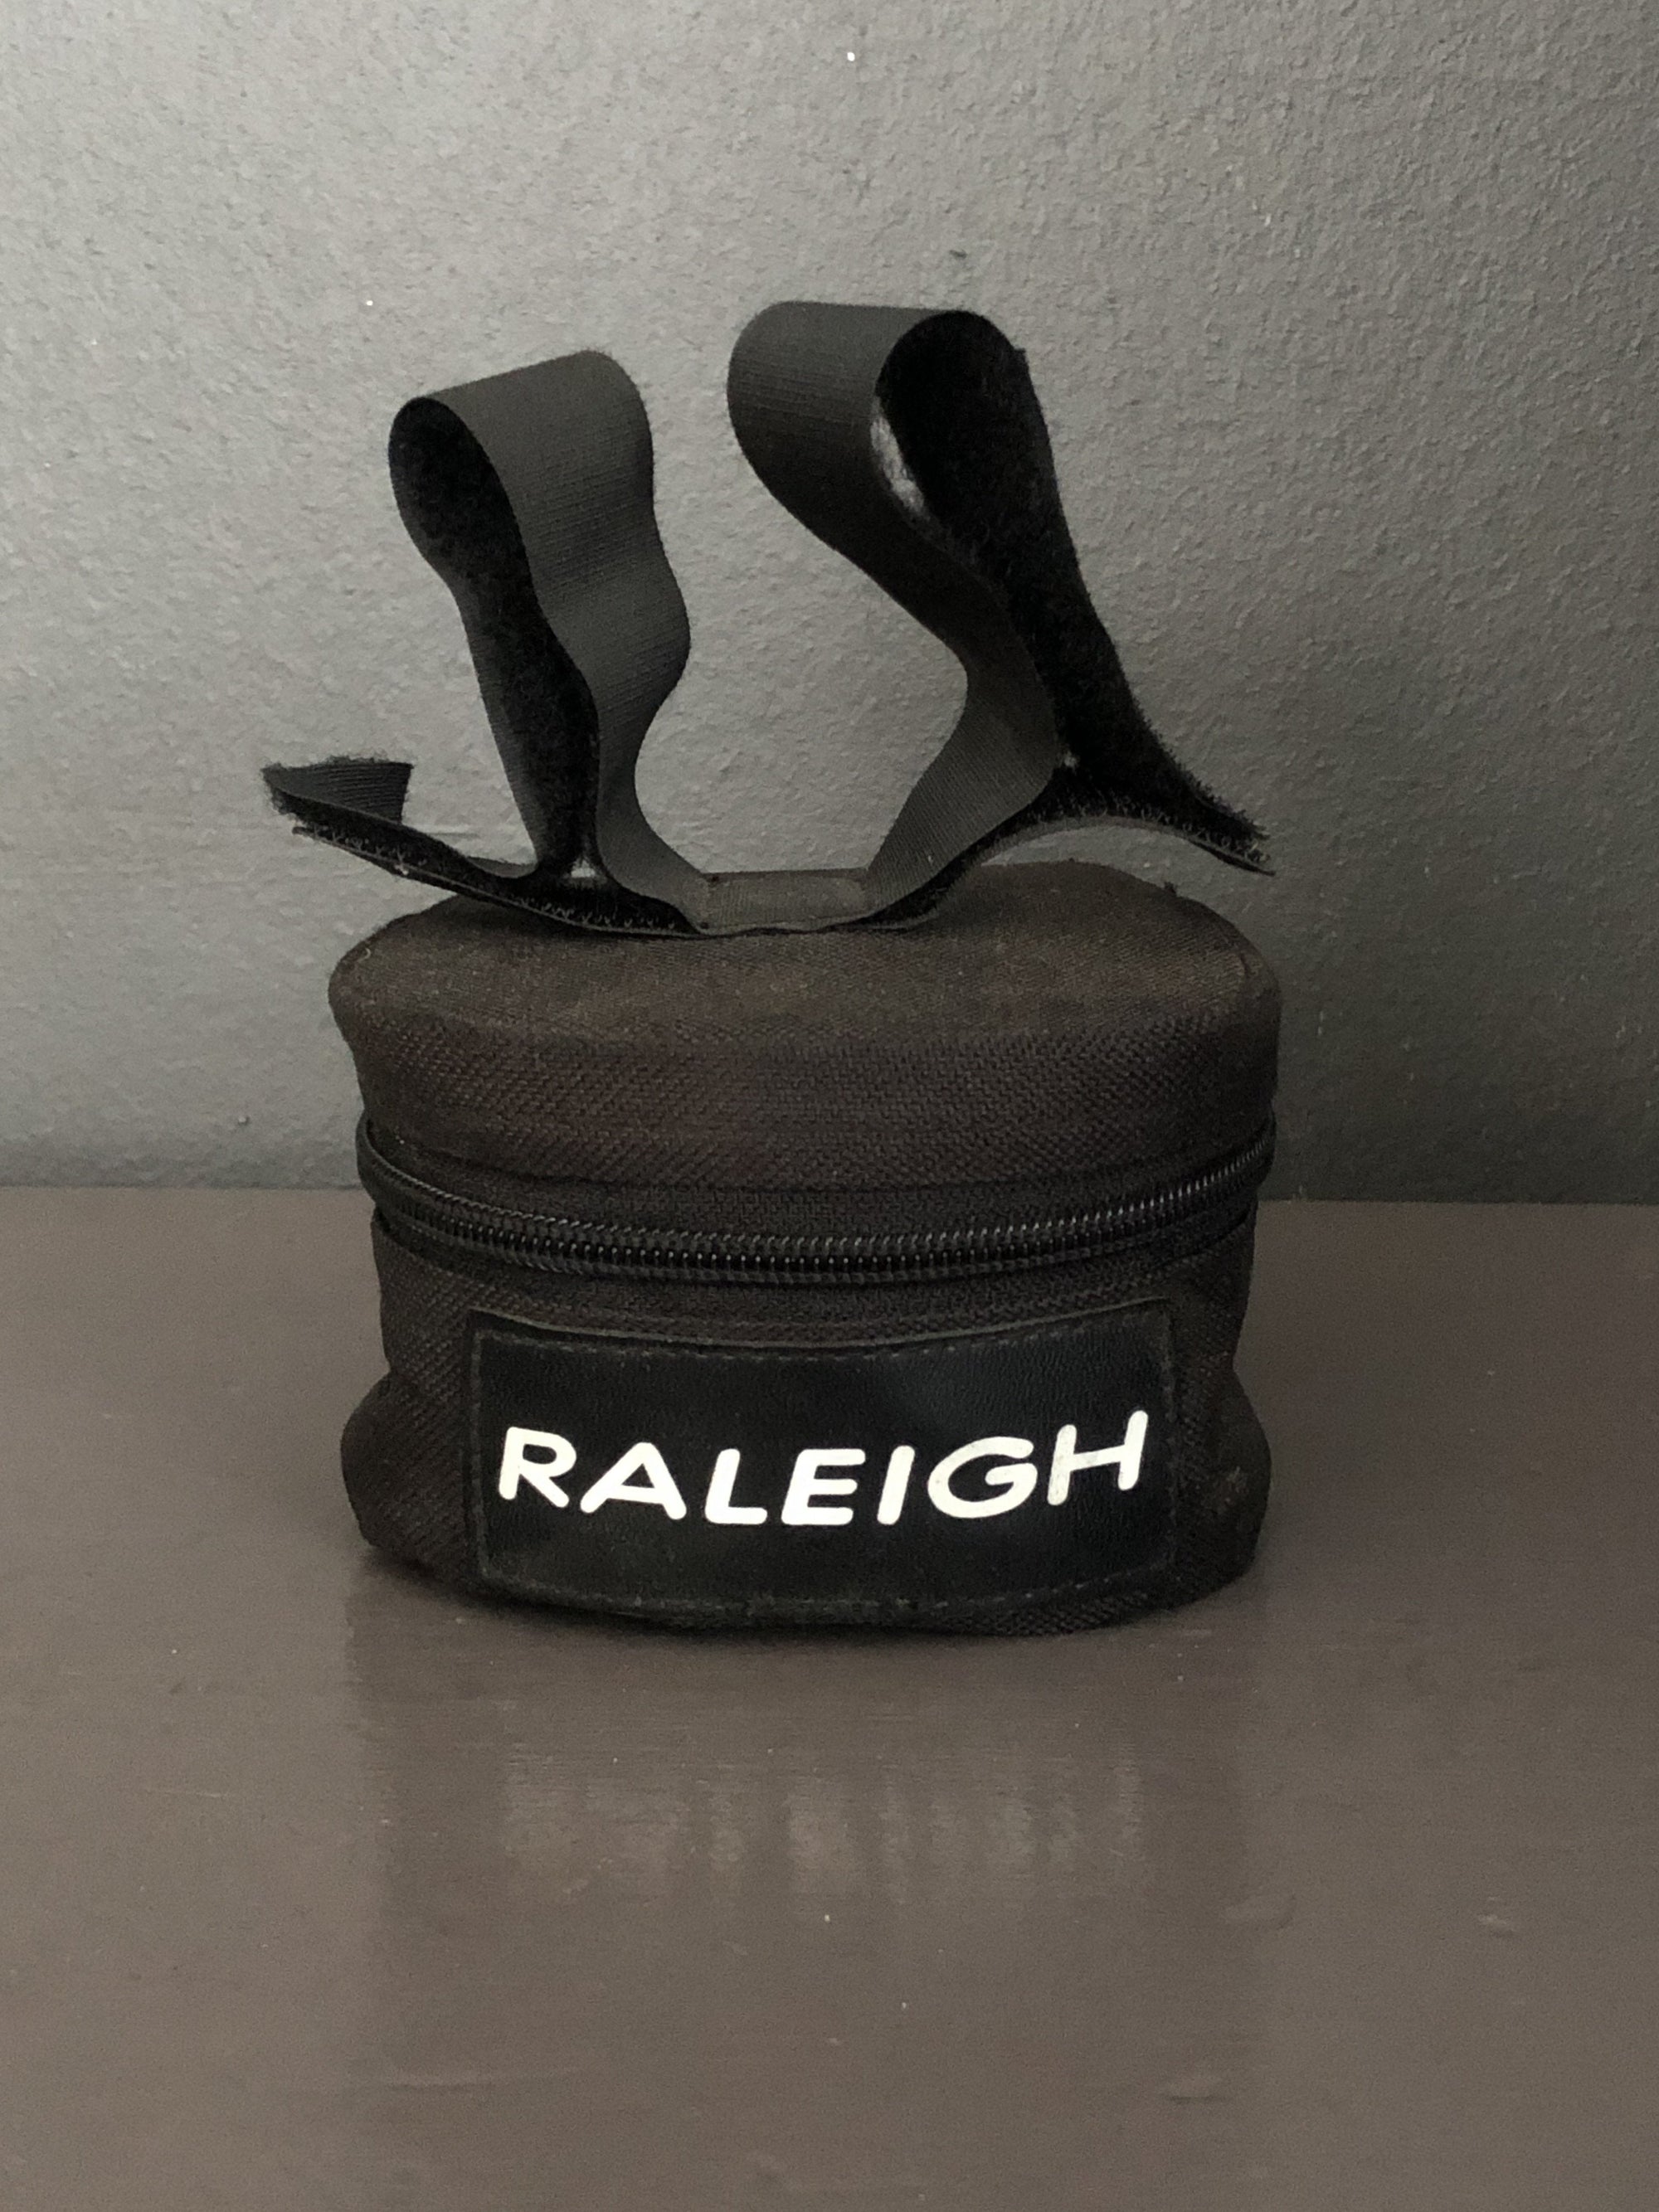 Raleigh Tool Bag - 2ndhandwarehouse.com